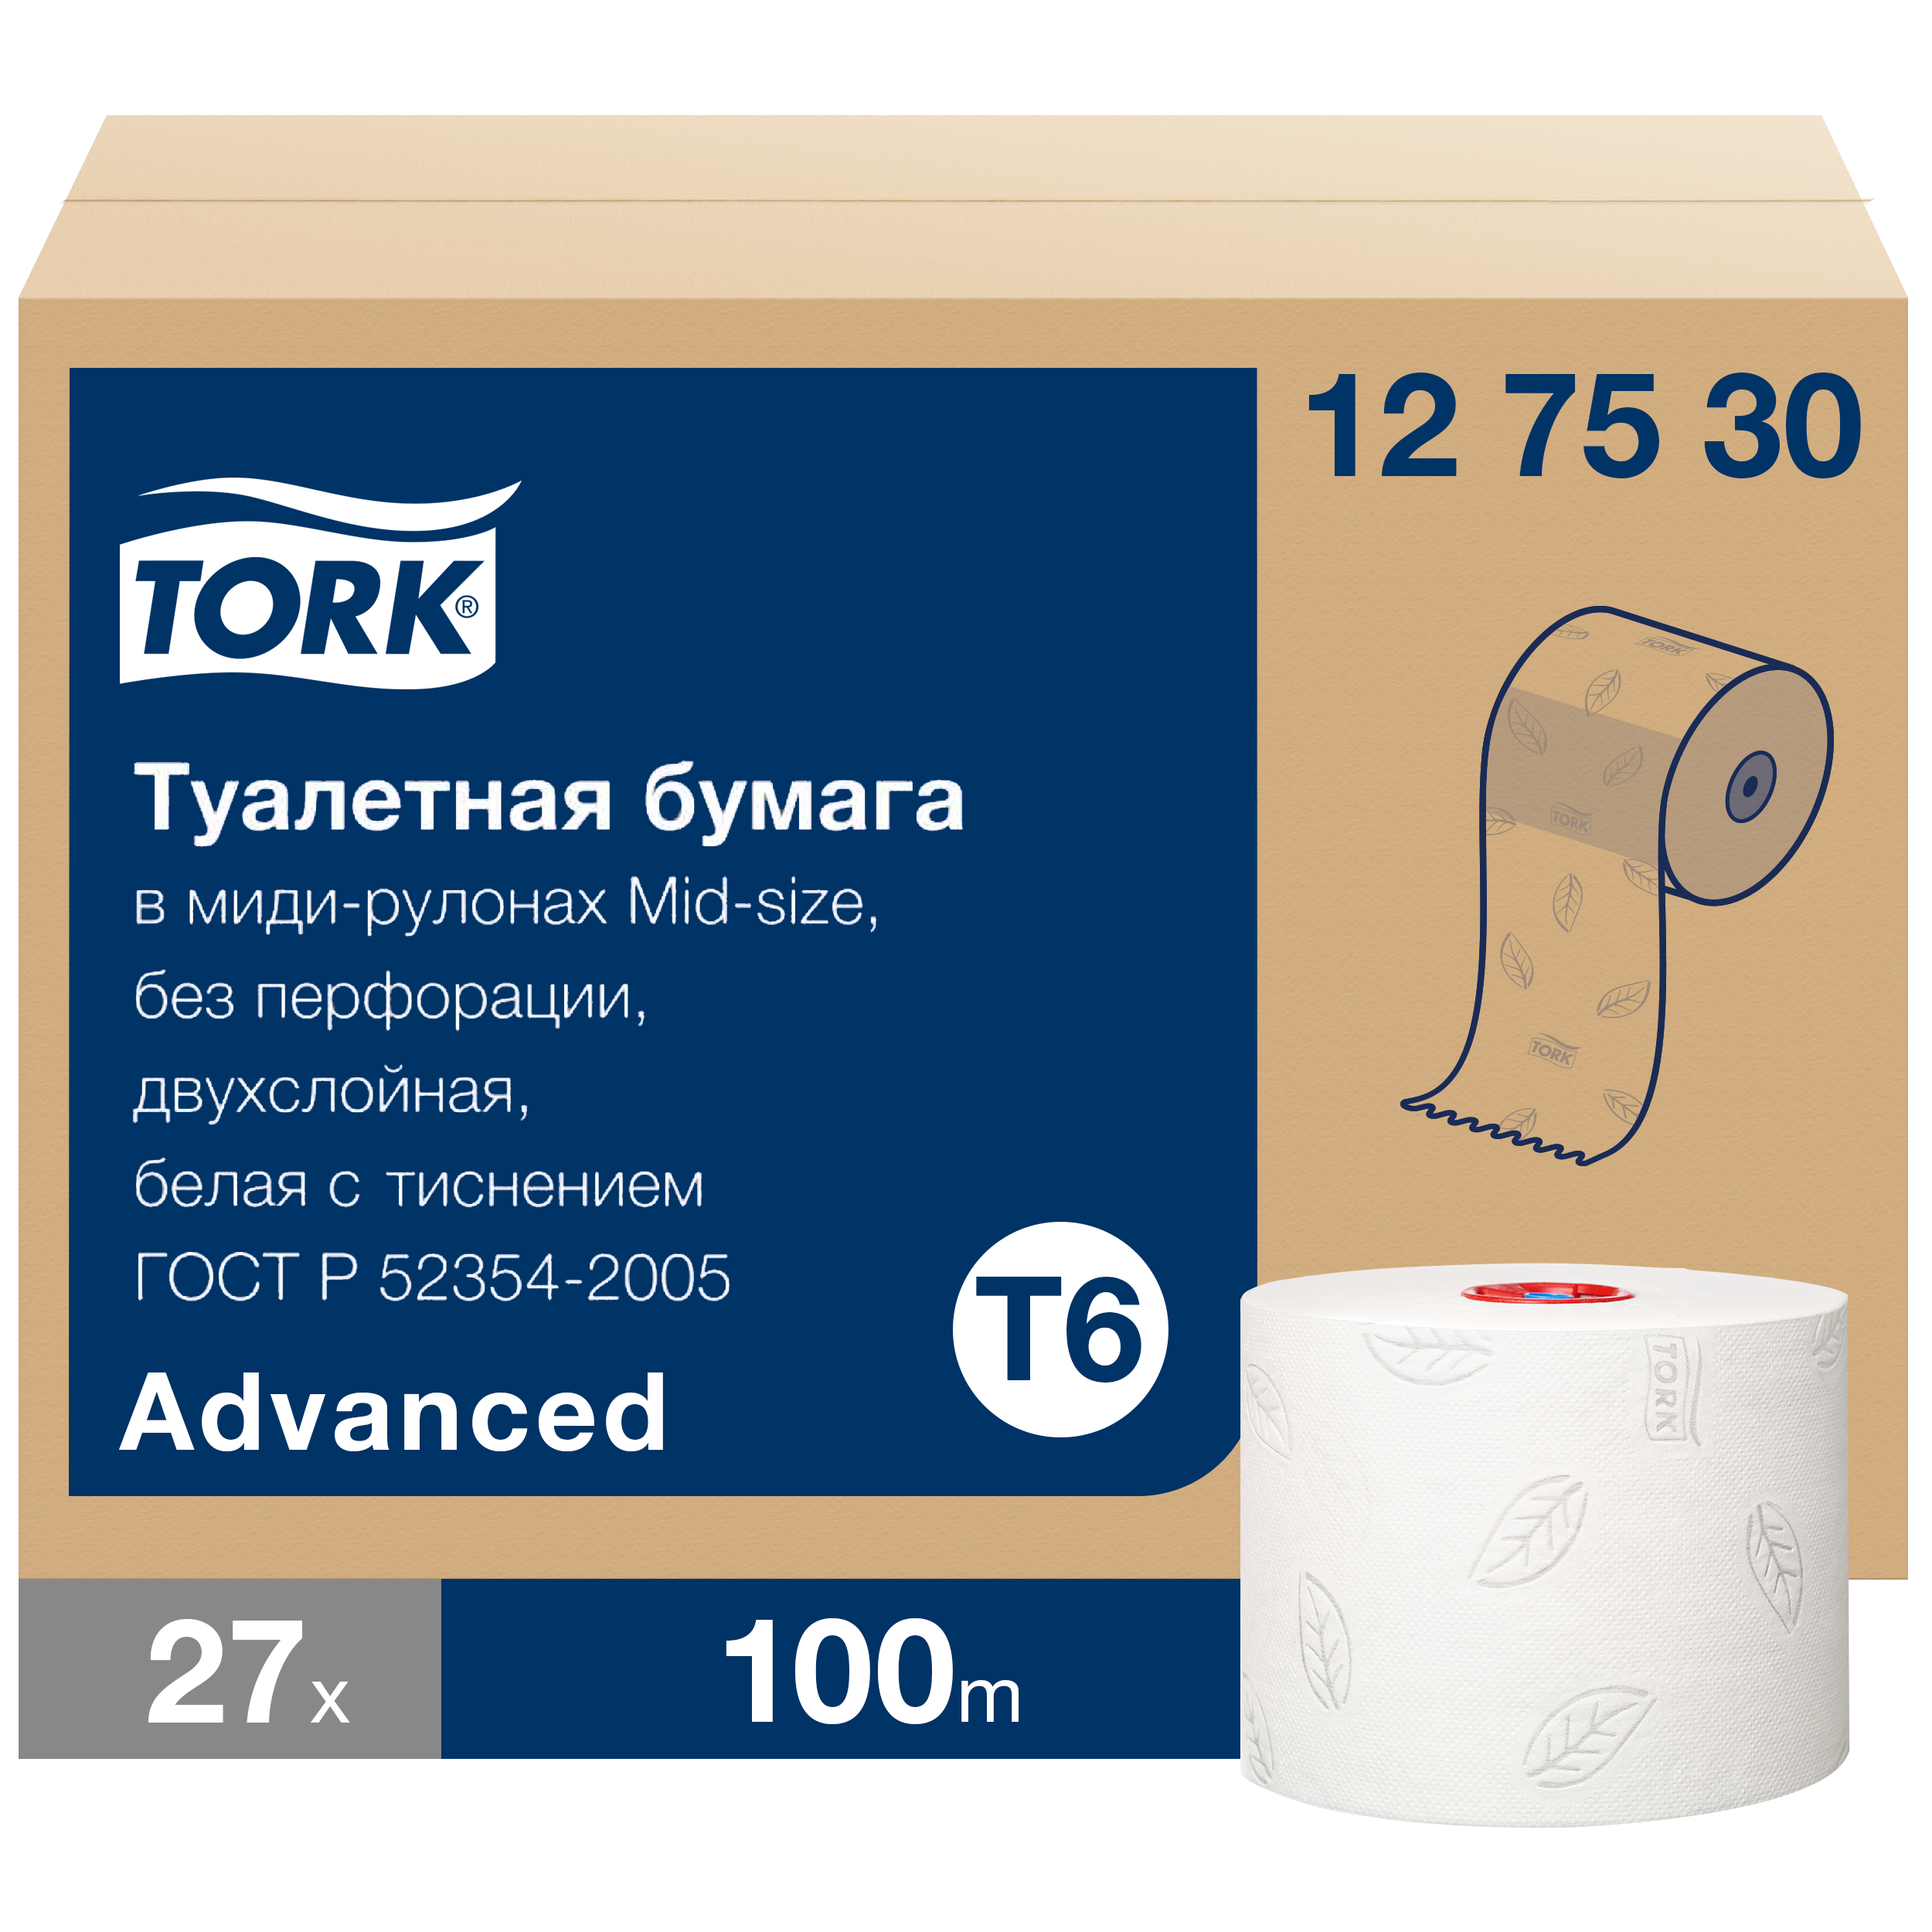 Бумага туалетная Tork Mid-size Advanced в рулонах, T6, 2 слоя, 100м, 27 рулонов